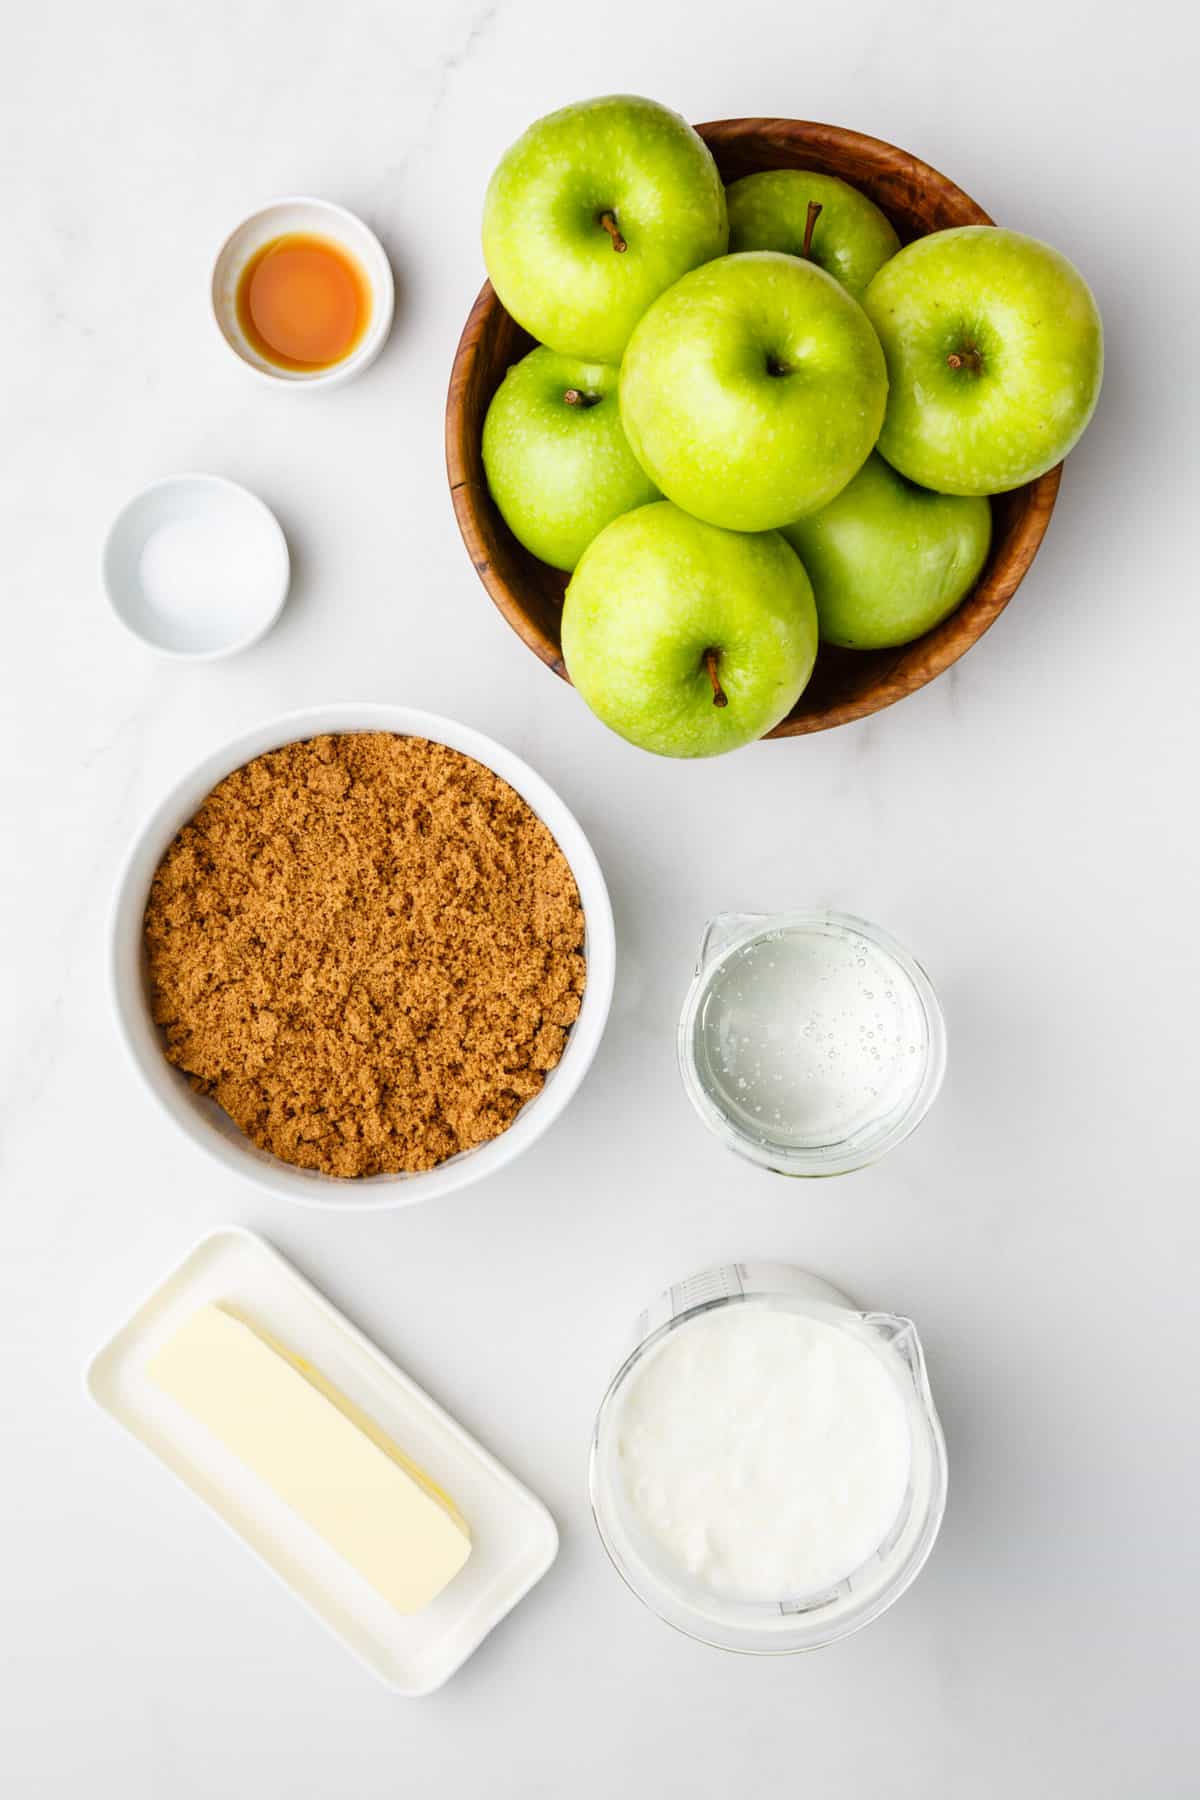 ingredients to make caramel apples